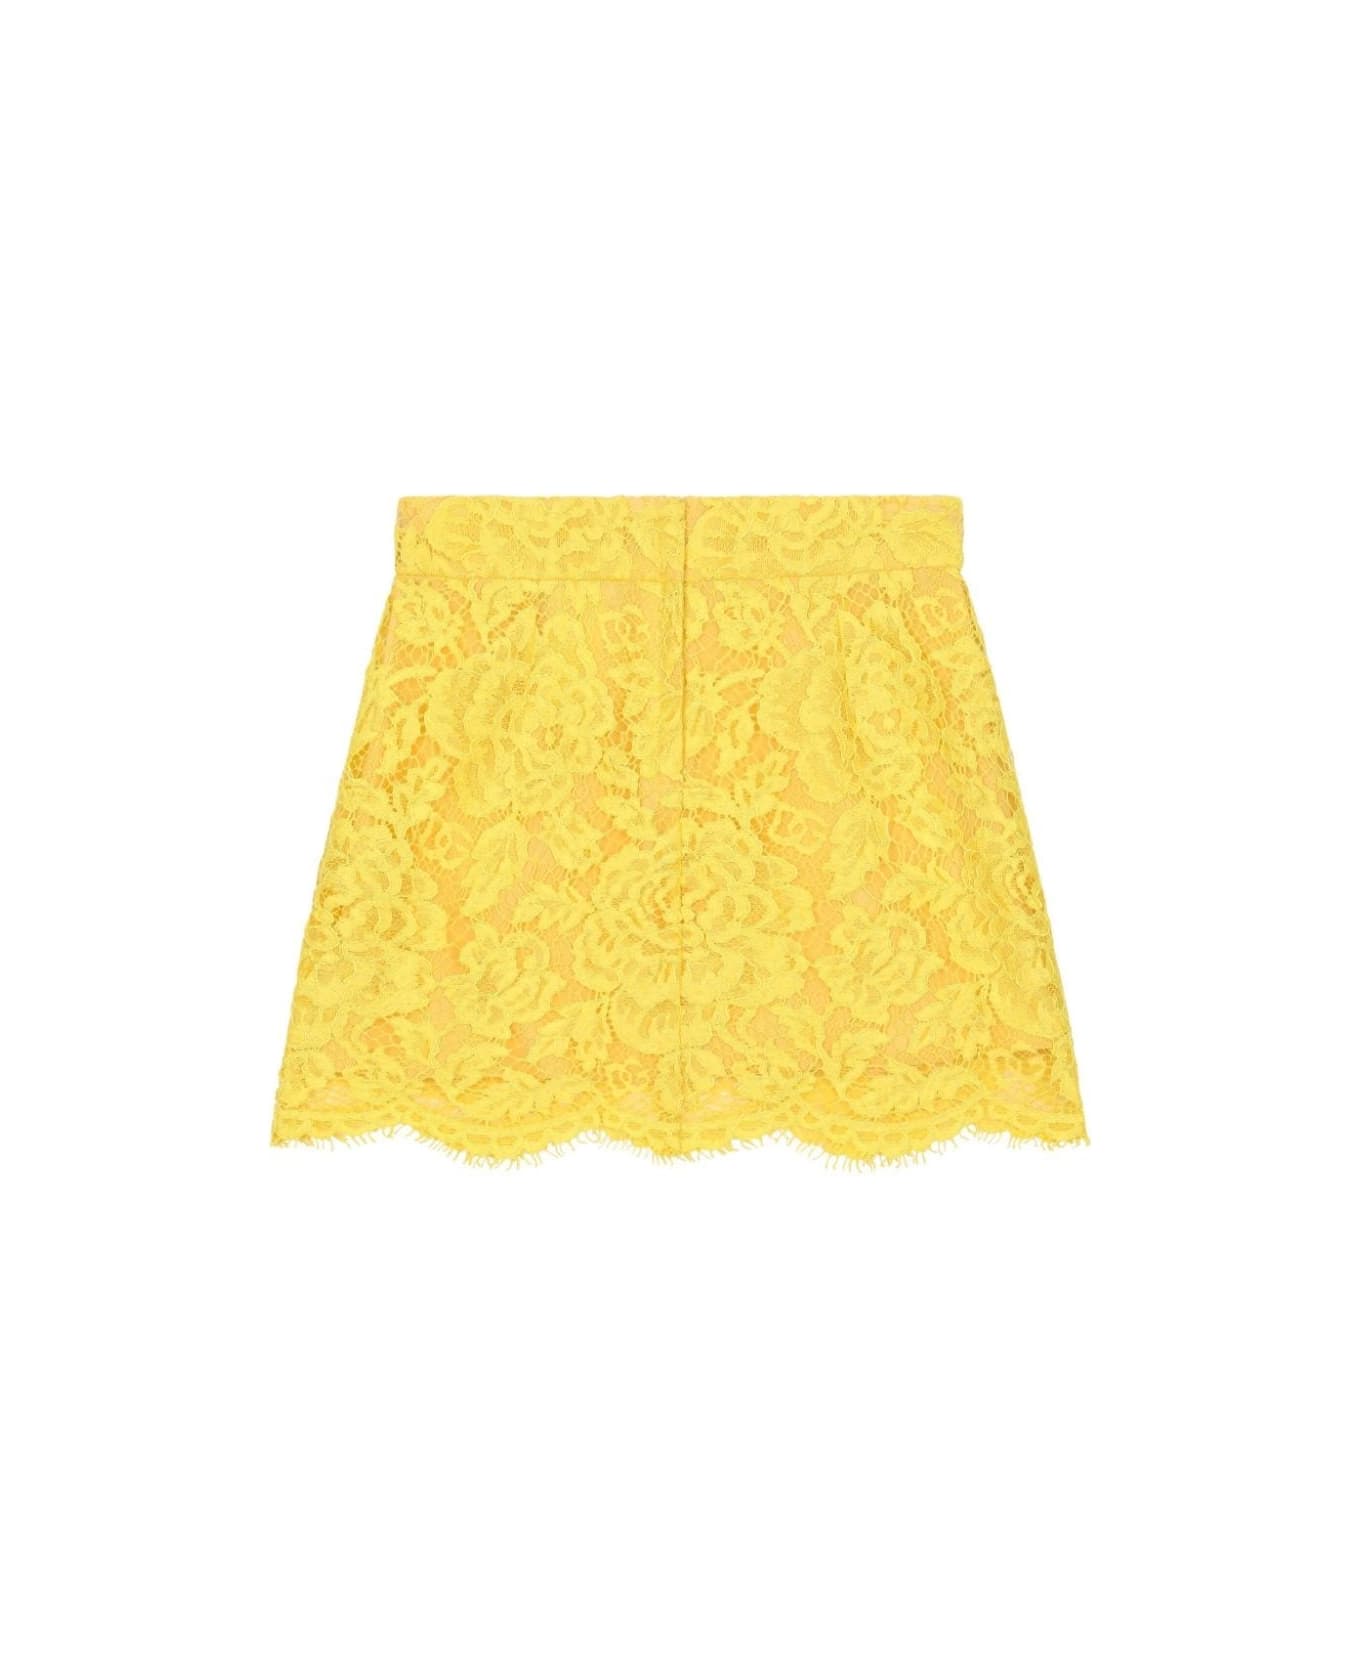 Dolce & Gabbana Short Yellow Lace Skirt - Yellow